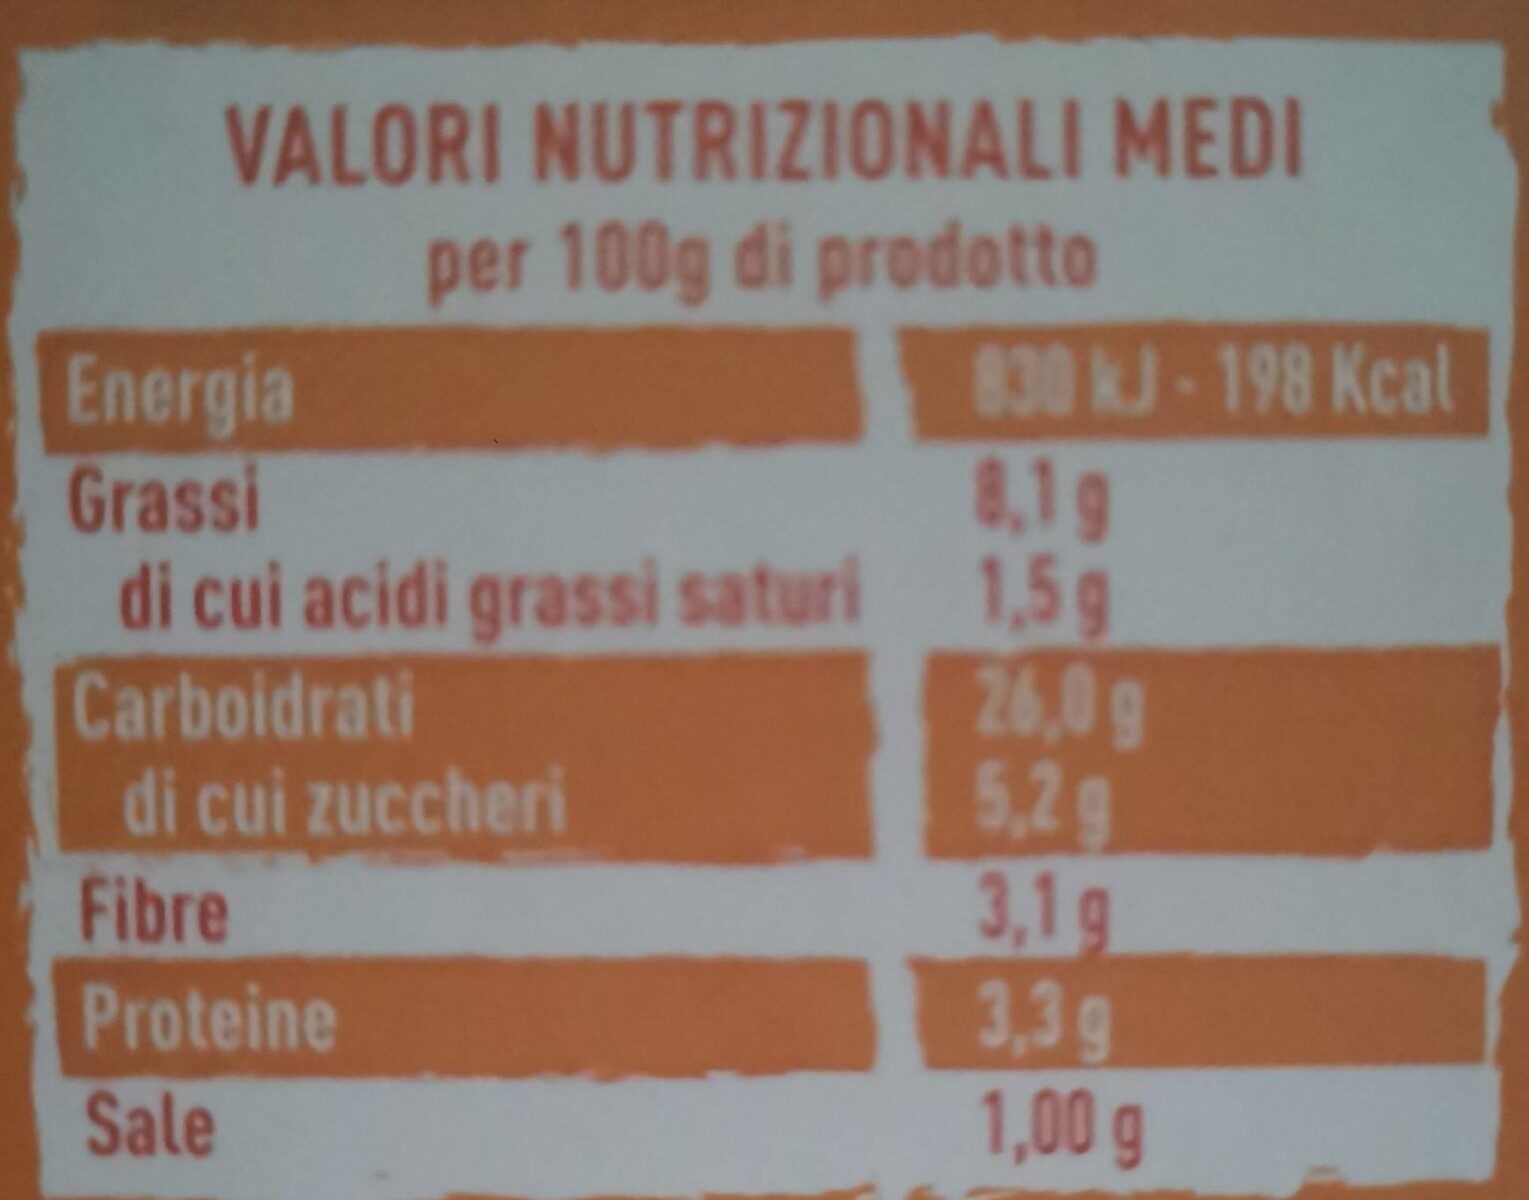 Cous cous di mais - Nutrition facts - it